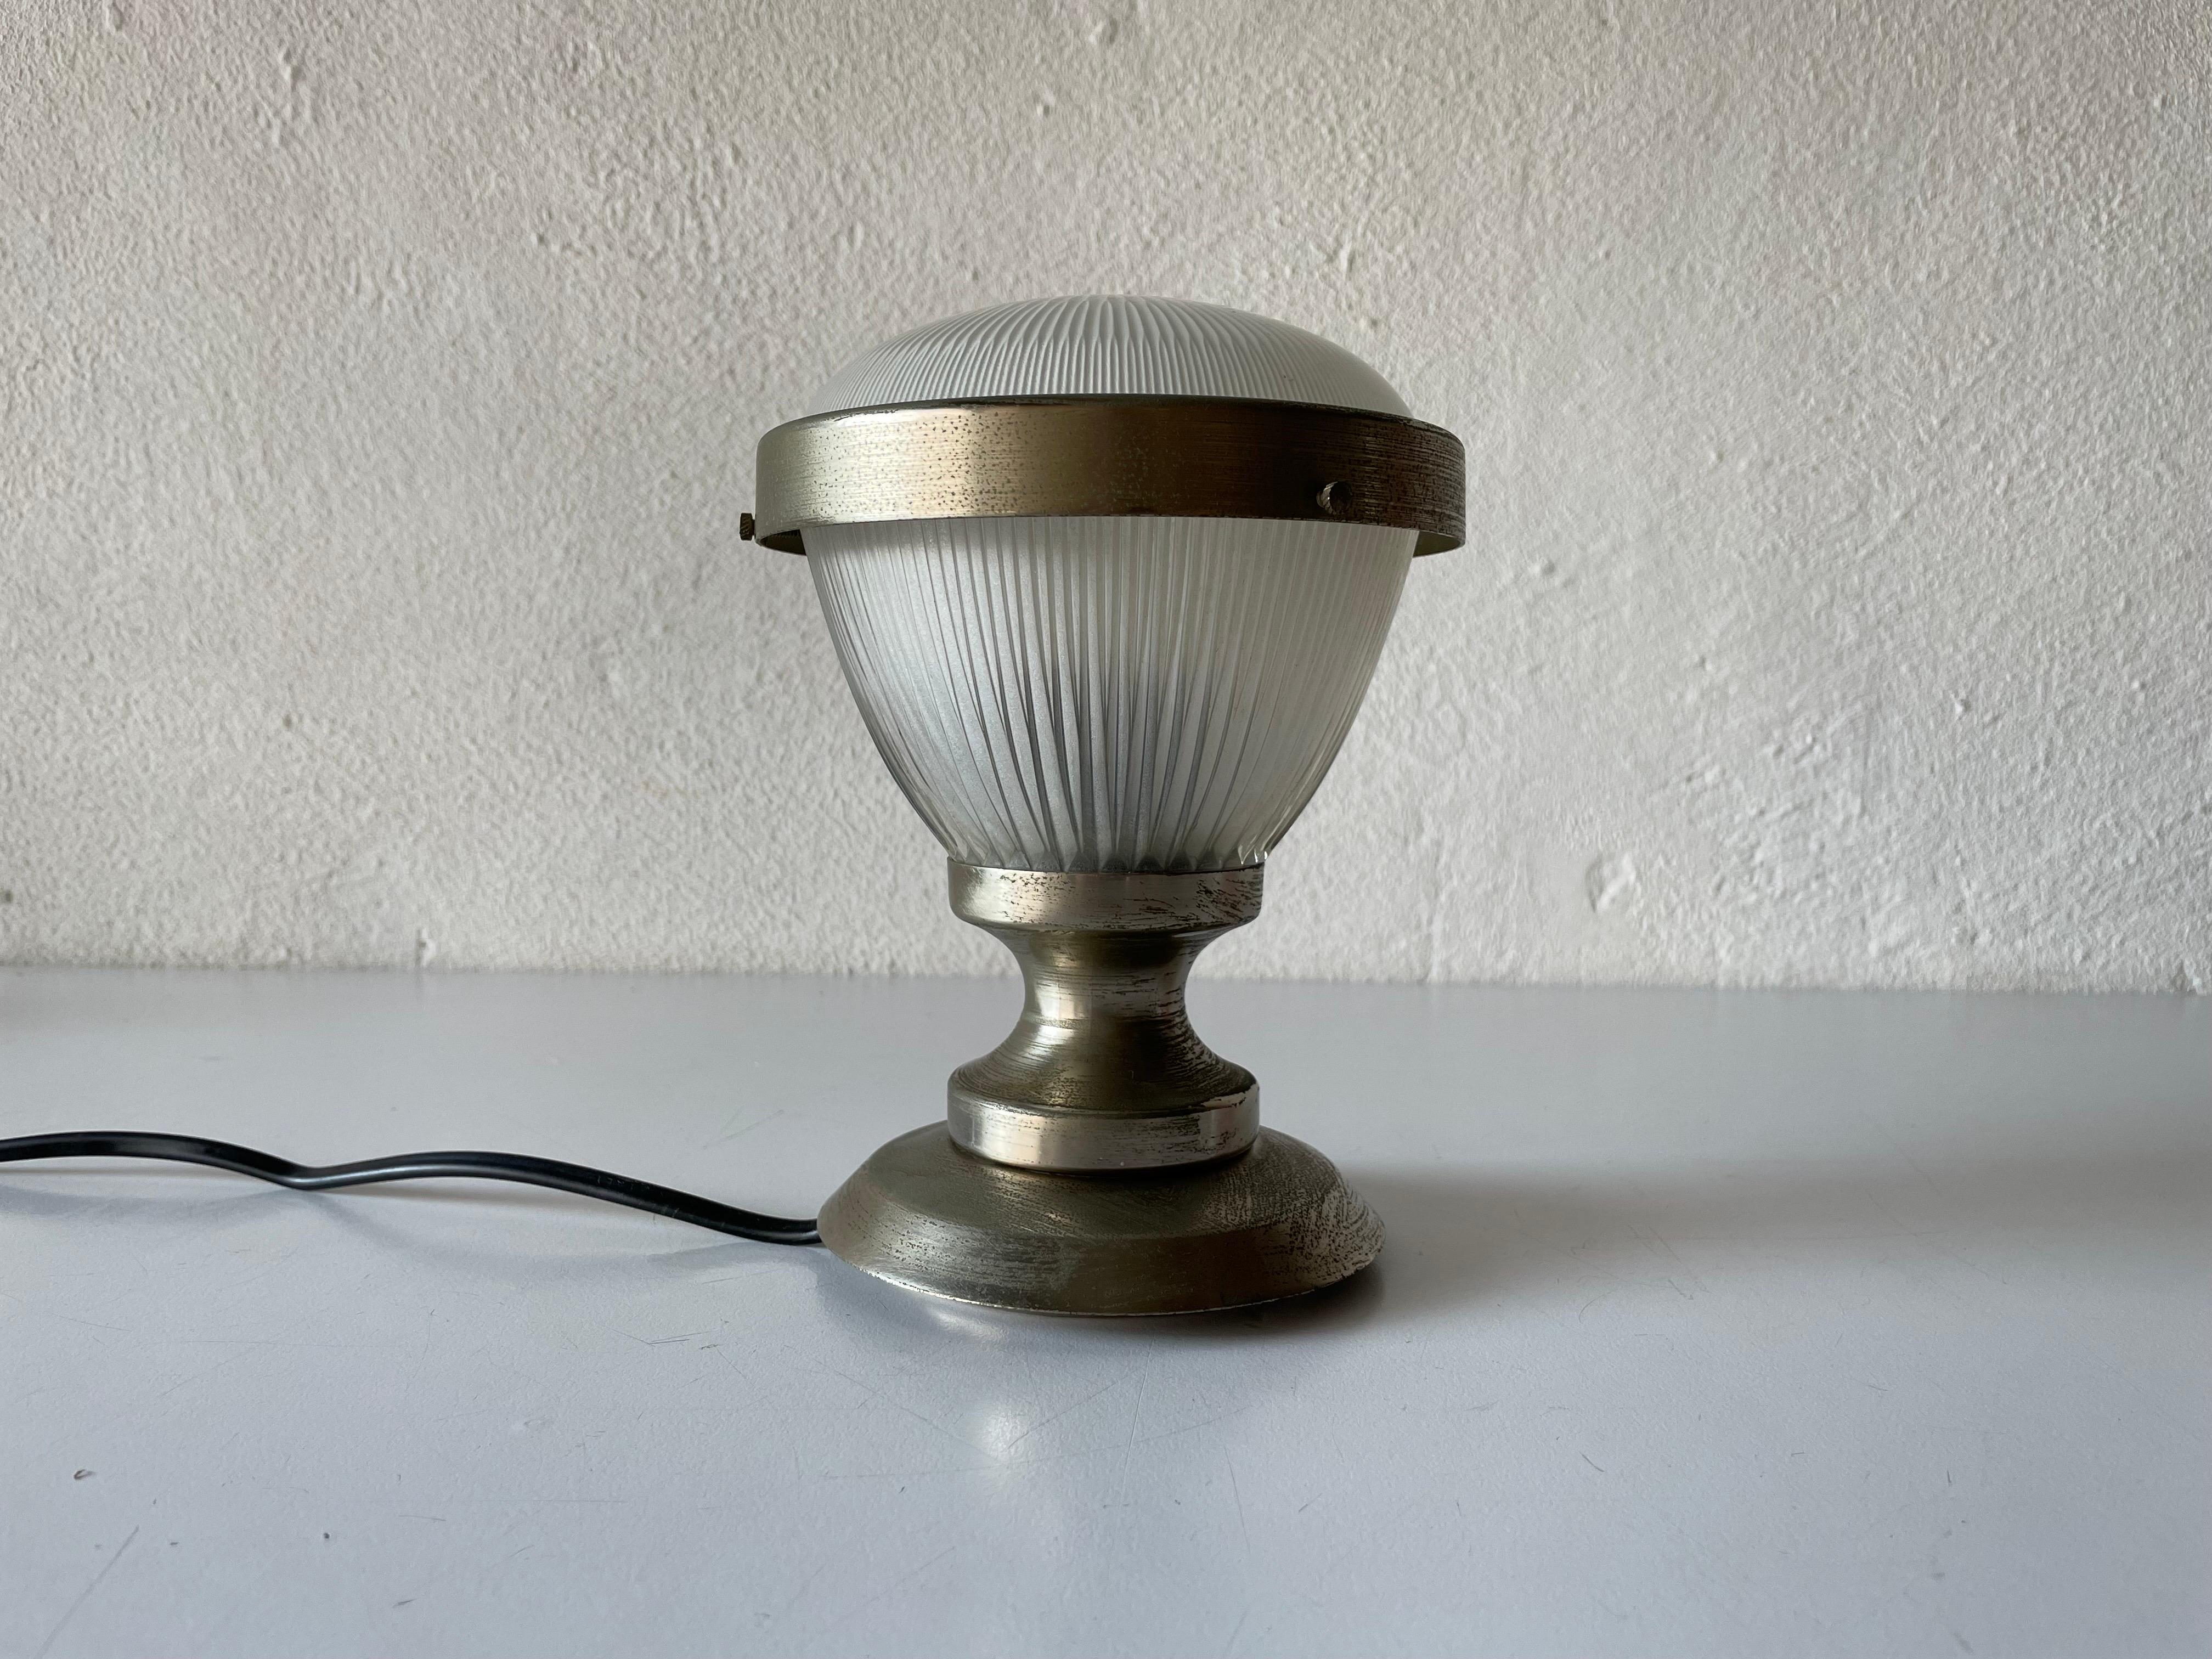 Lampe de table de Sergio Mazza, années 1960, Italie

L'abat-jour est en très bon état vintage.

Il est équipé d'une prise européenne. Il peut être converti en fiches d'autres pays à l'aide d'un convertisseur. Il peut également être recâblé en